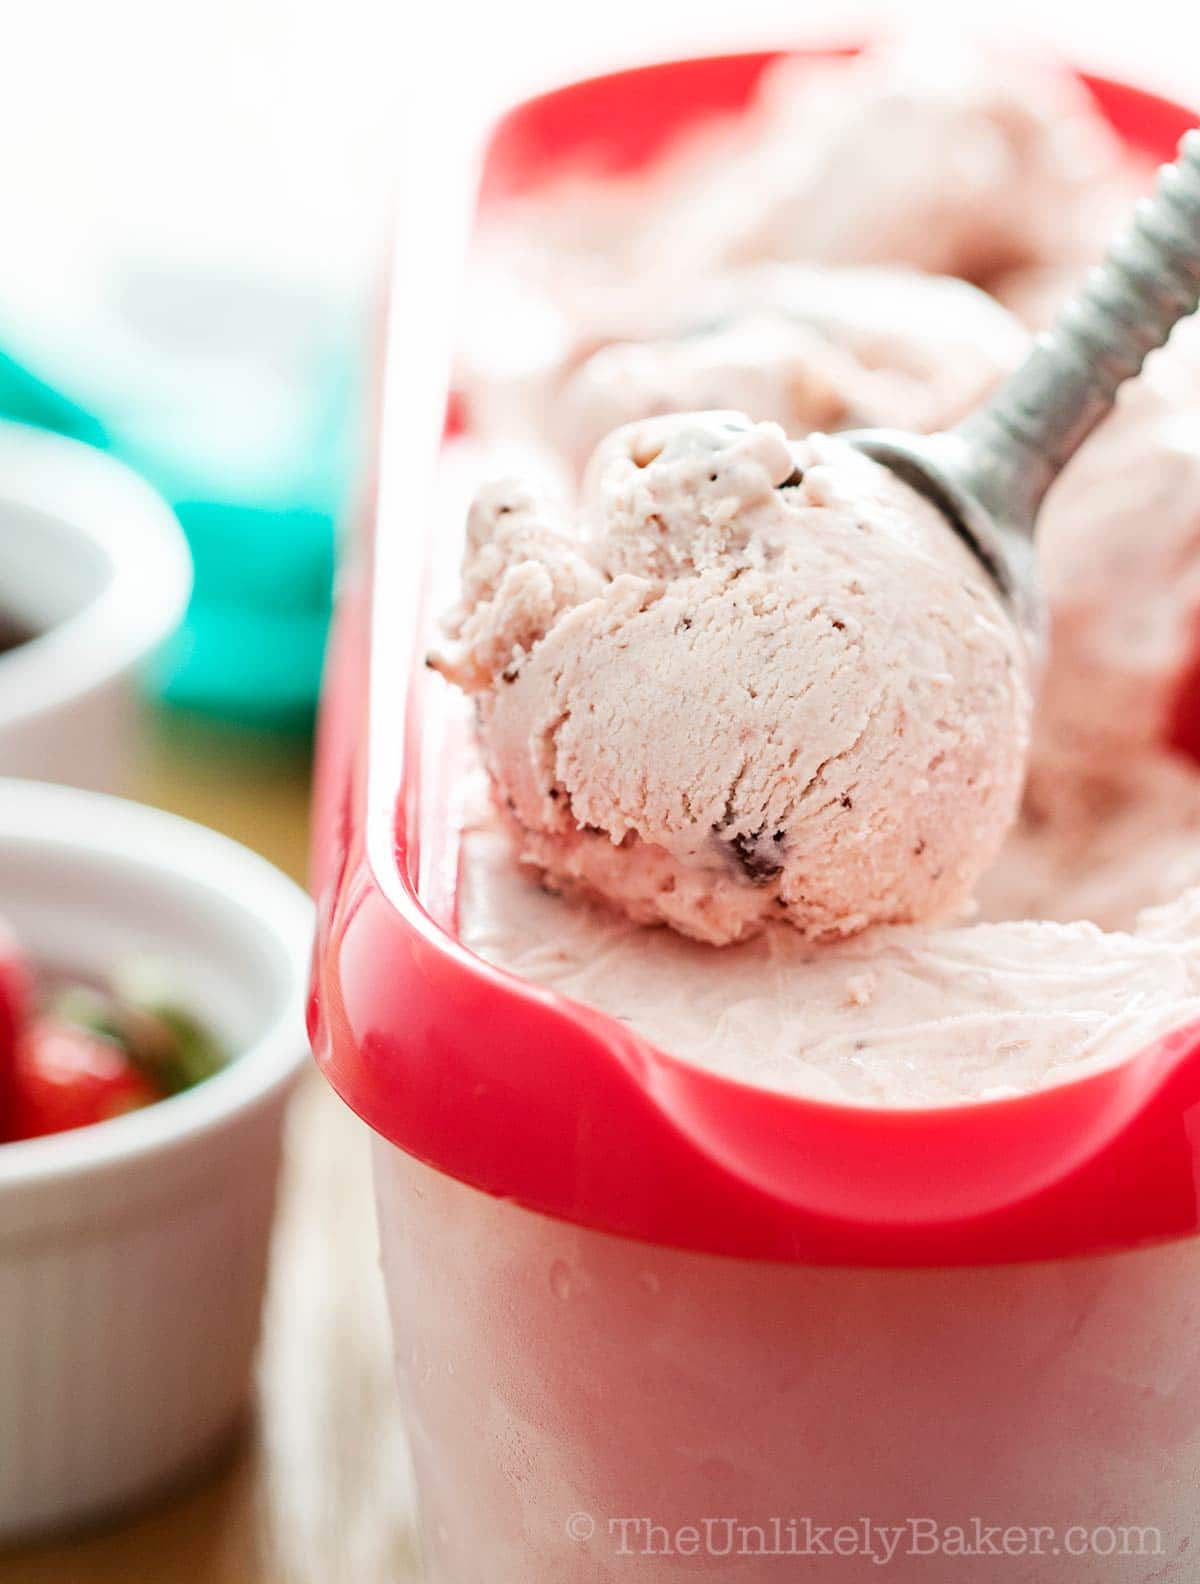 Fresh strawberry ice cream scoop.